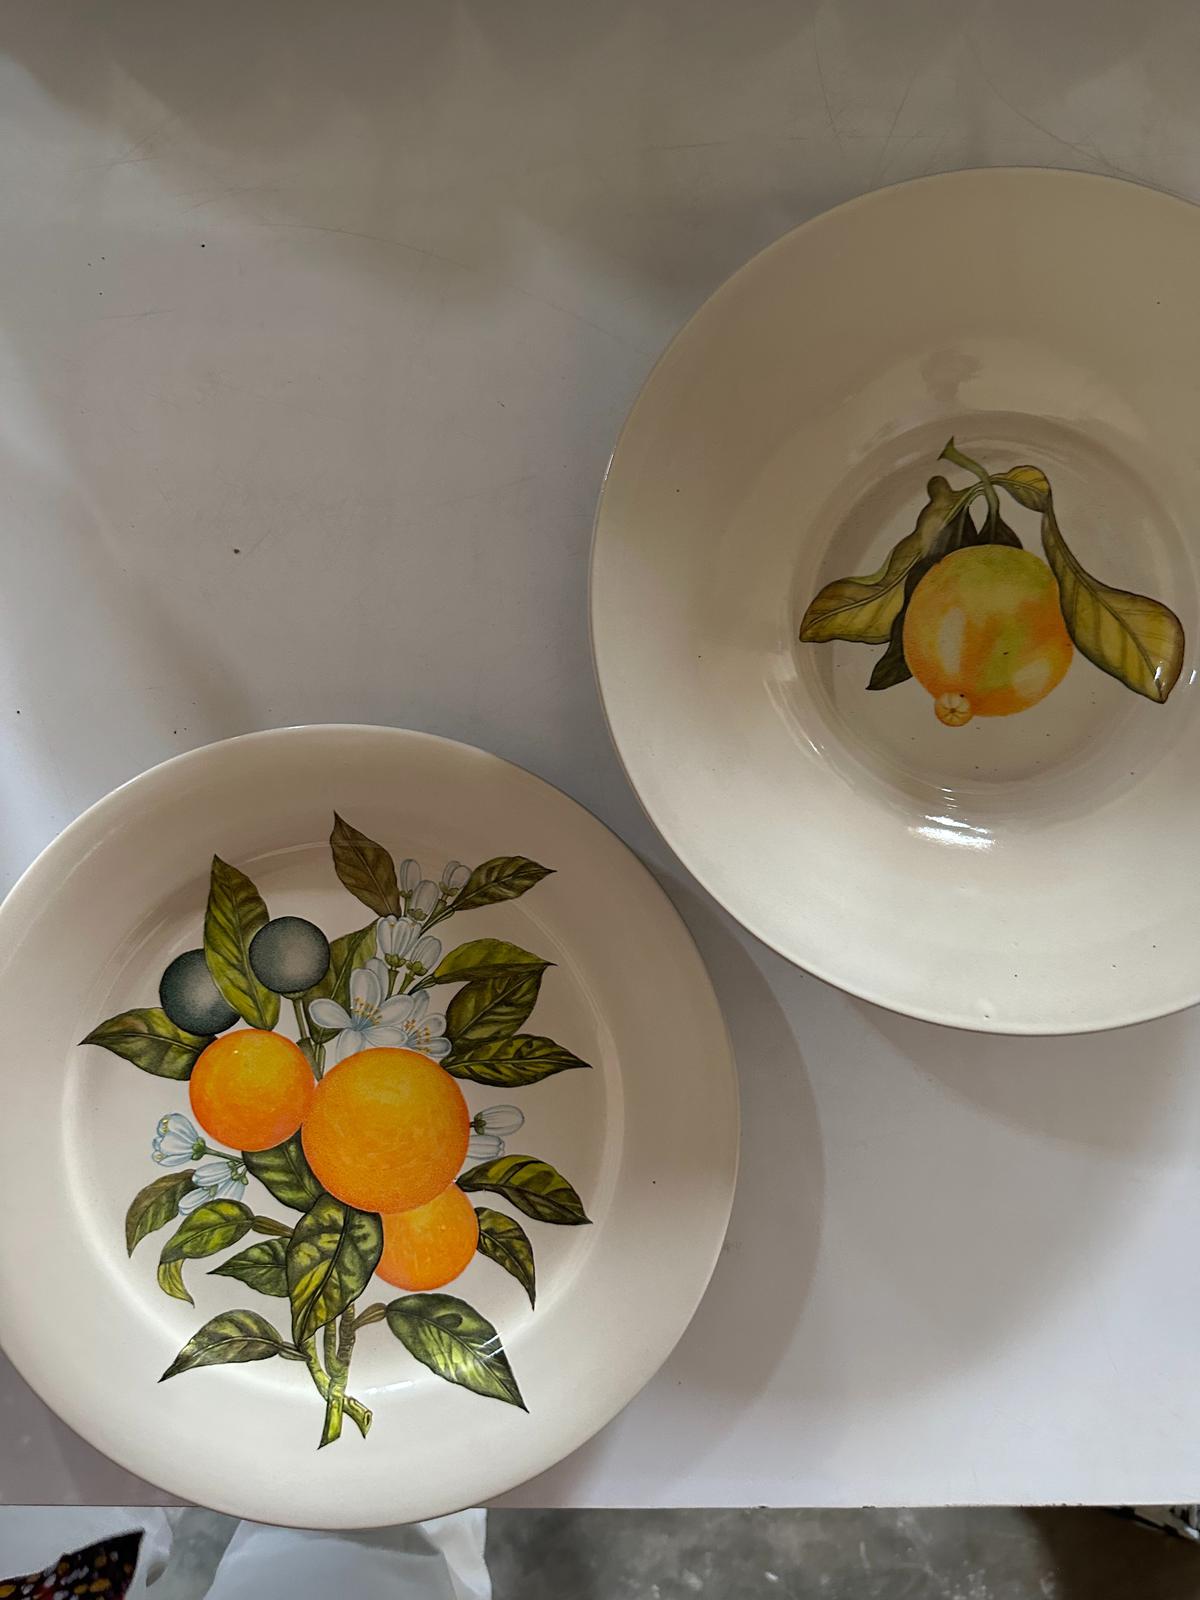 Khanoom’s botanical bowls